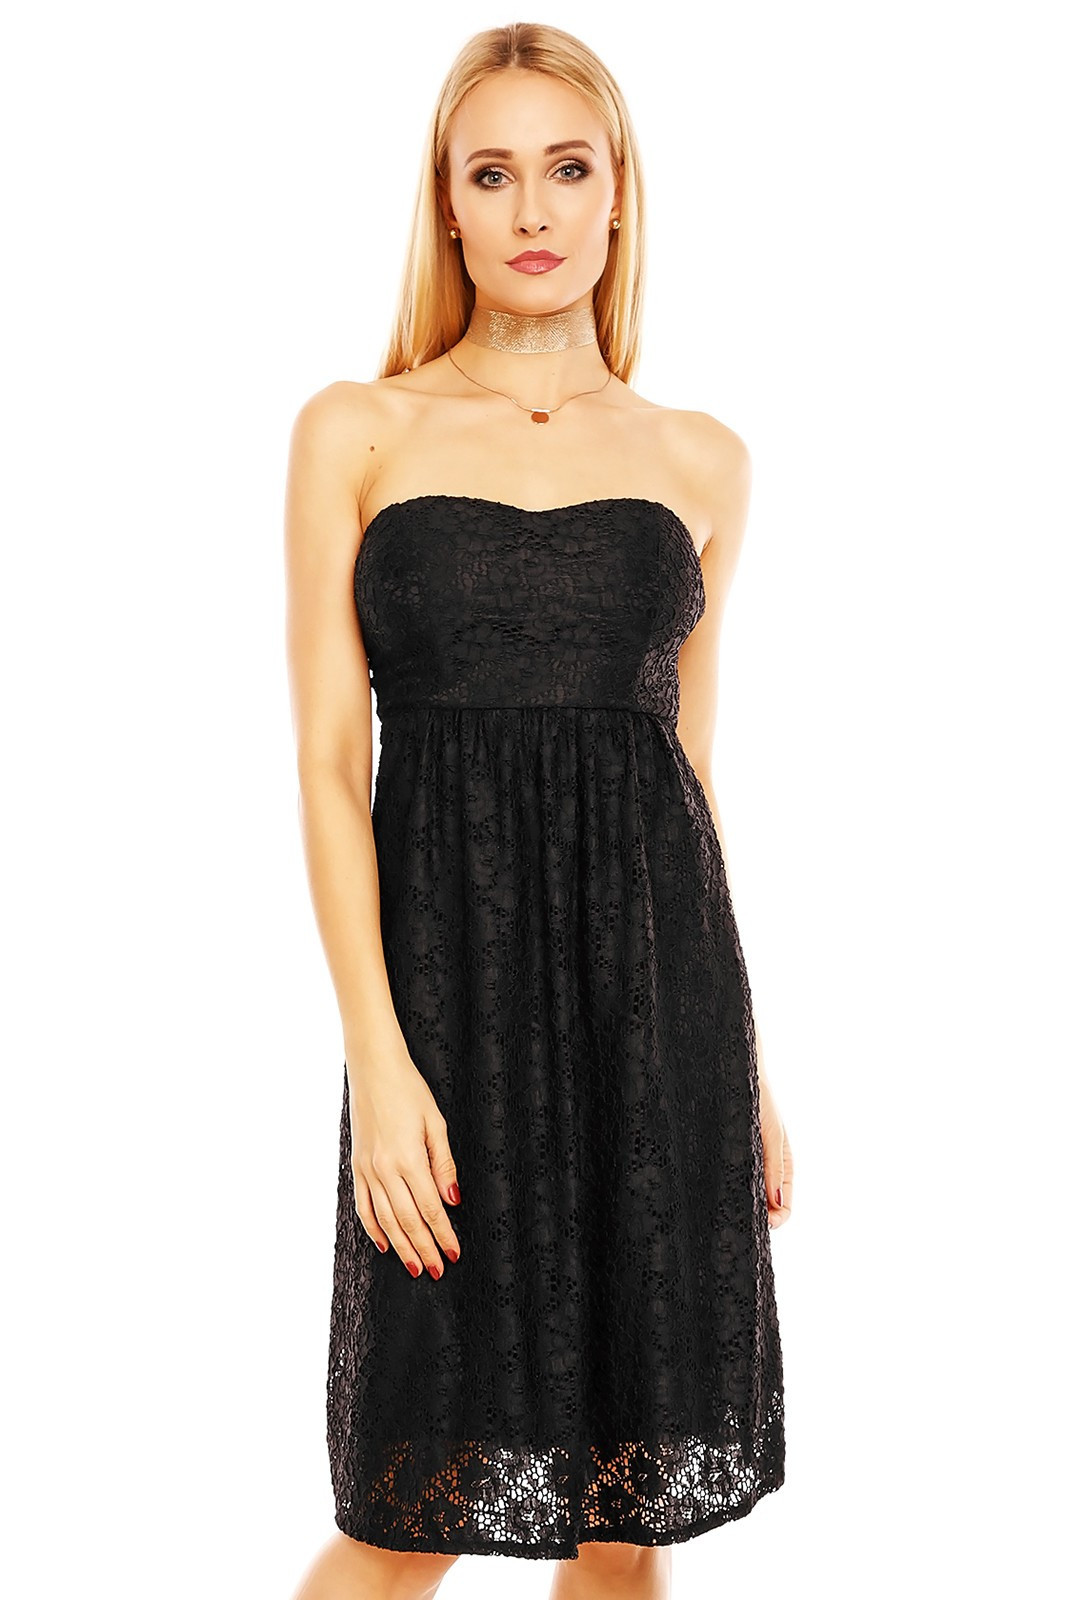 Společenské dámské šaty krajkové bez ramínek černé - Černá - MAYAADI XL